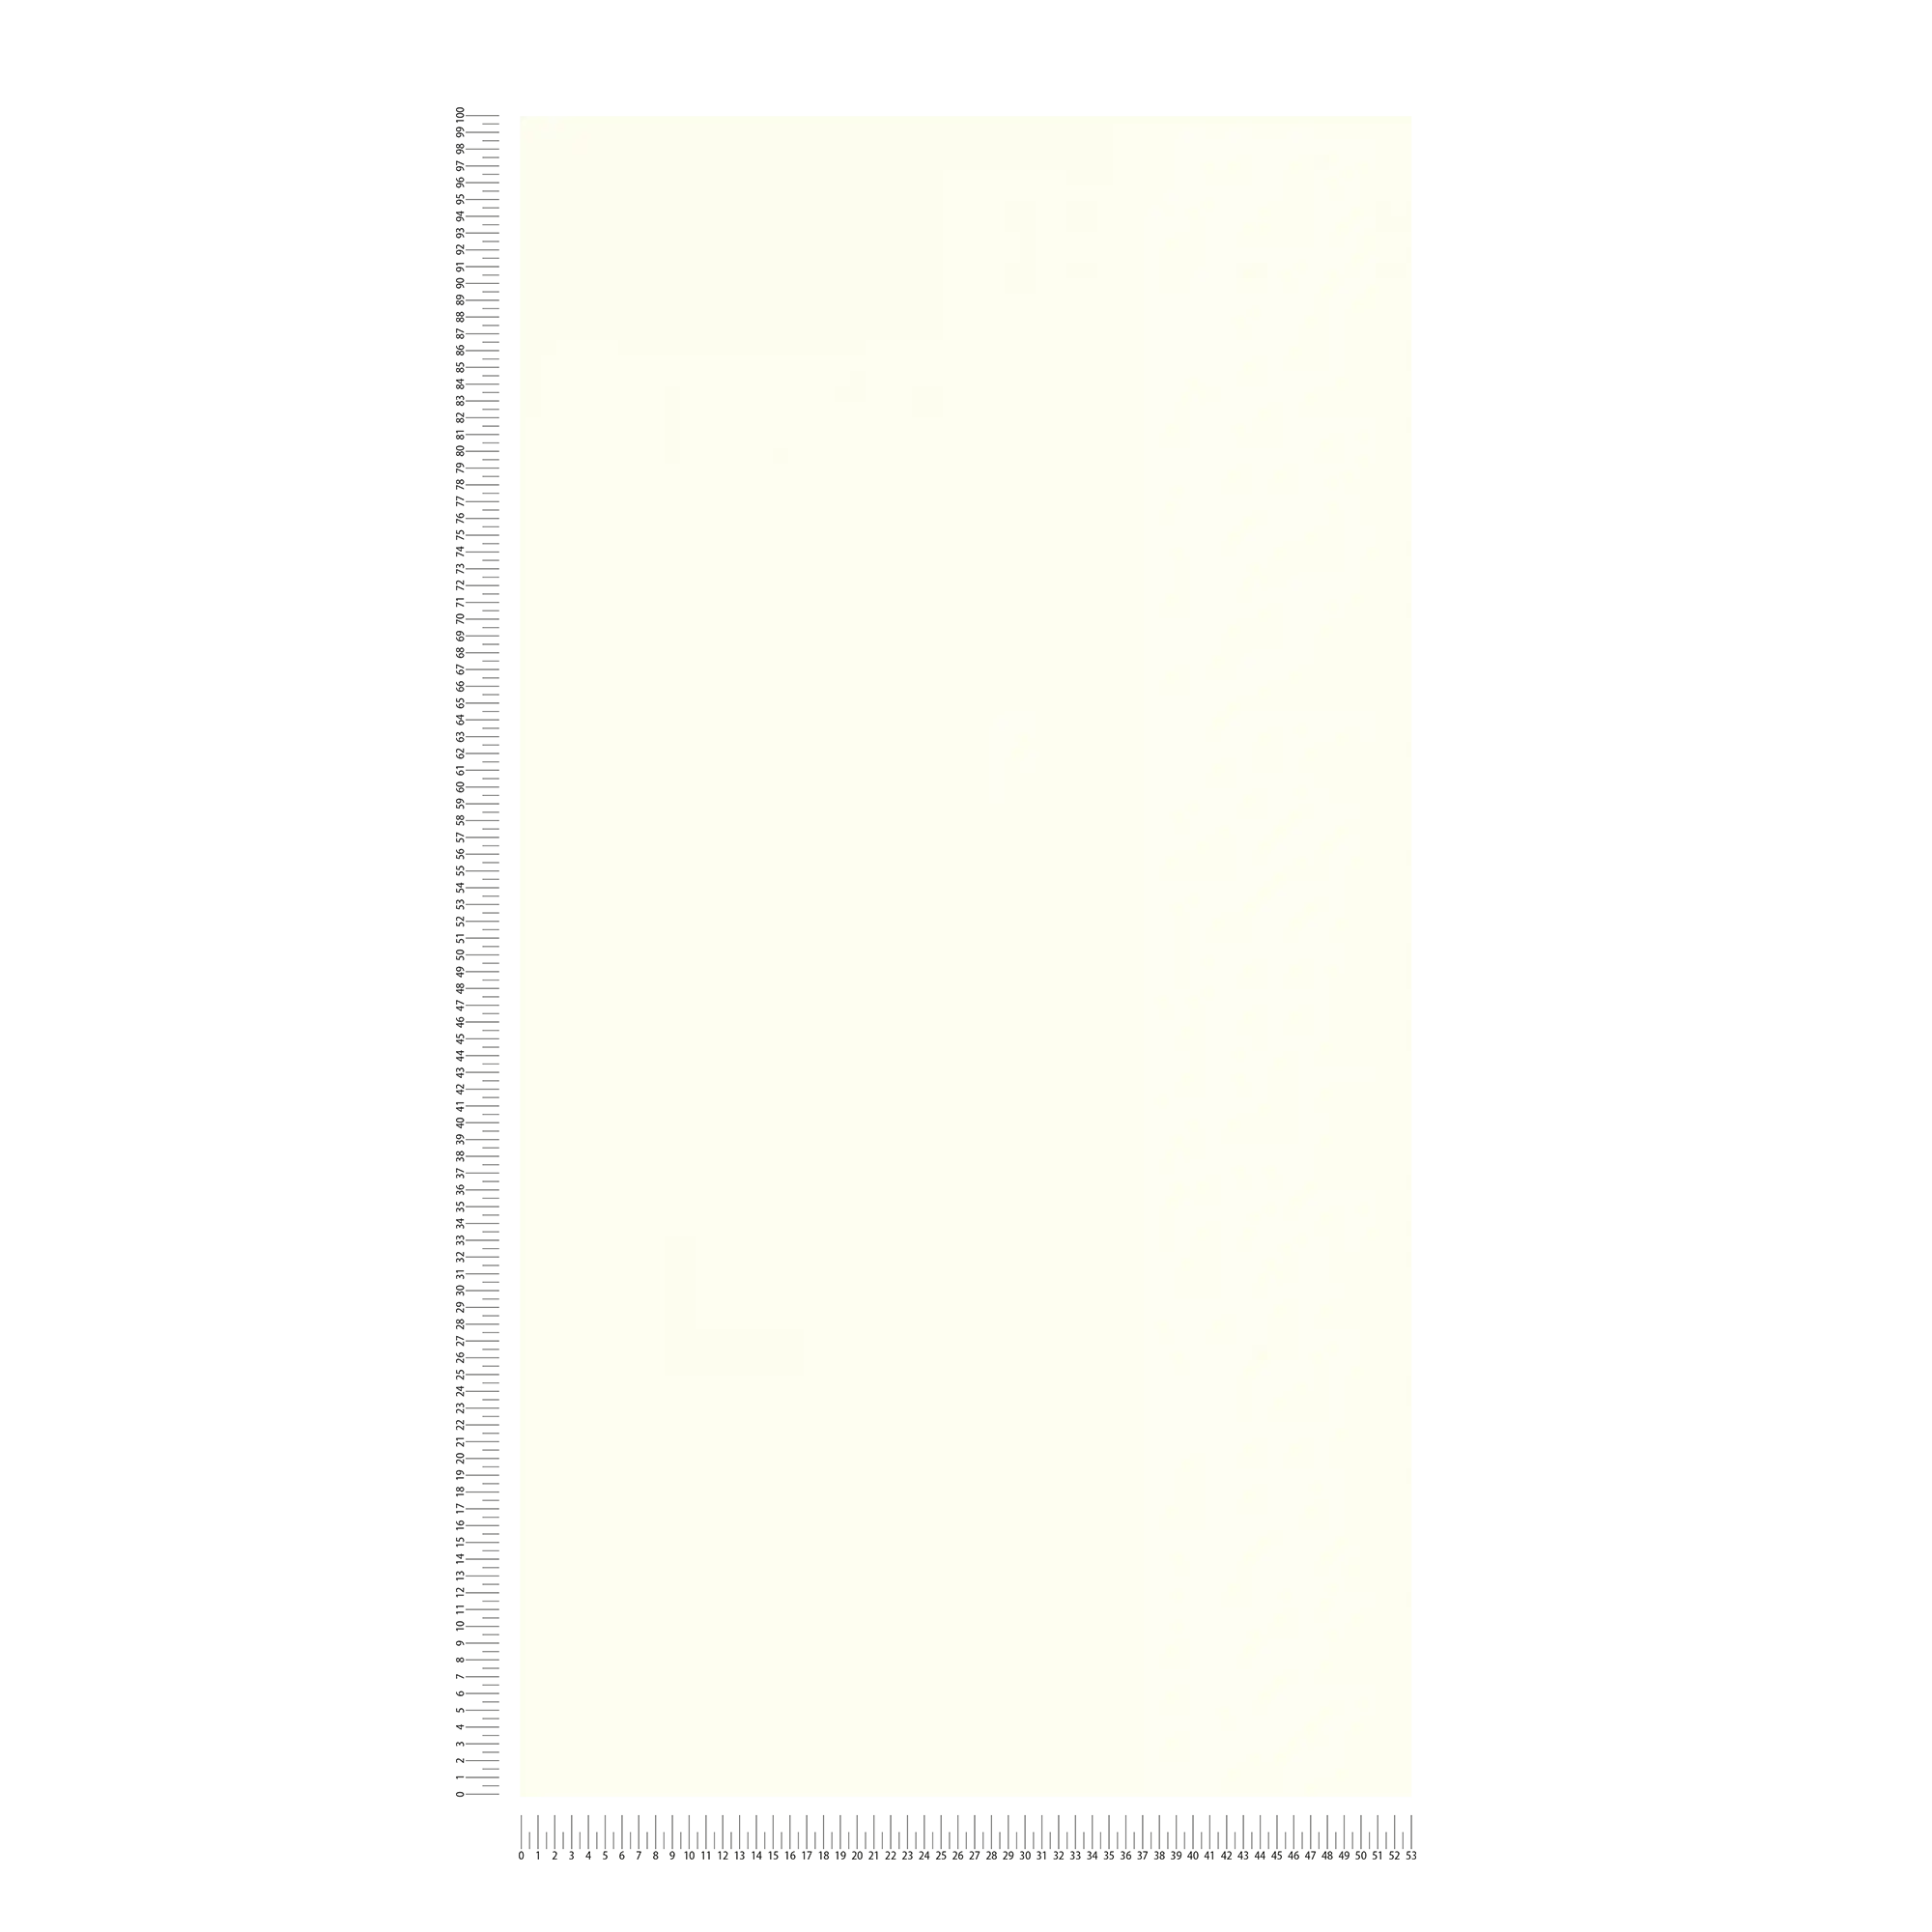             Papel pintado mate blanco liso con estructura
        